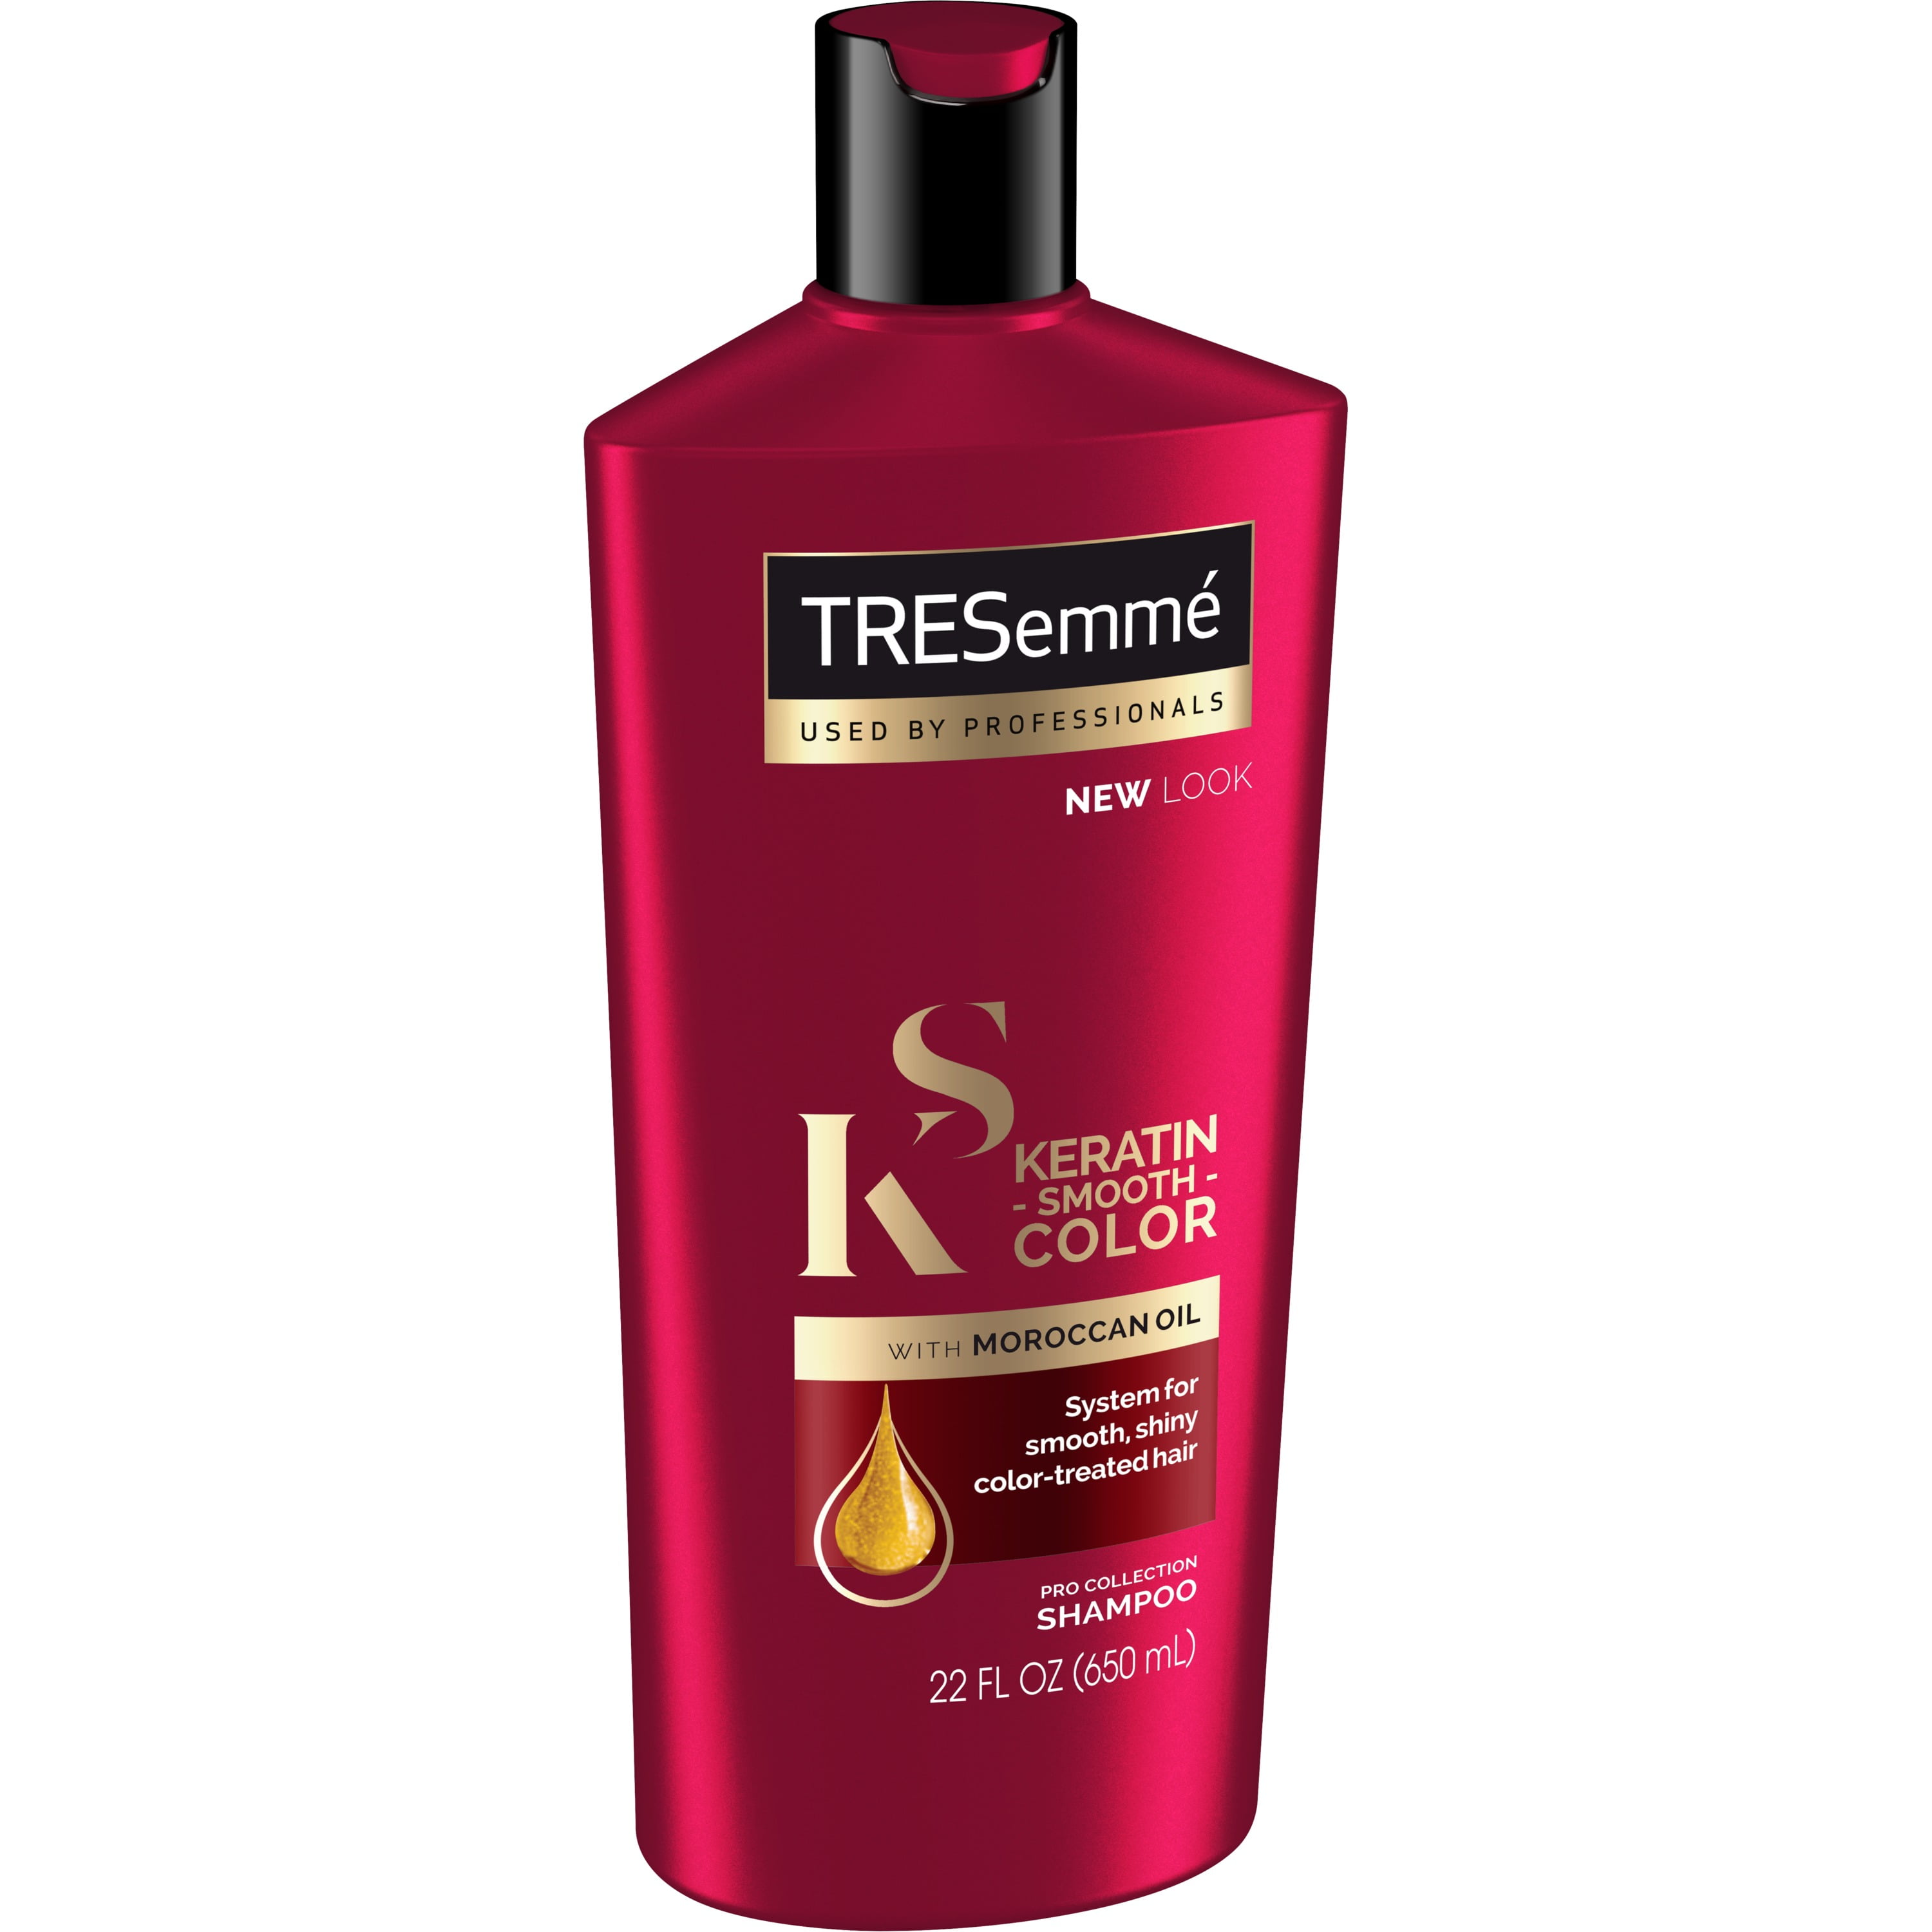 Shampoo Keratin Smooth Color, 22 oz - Walmart.com